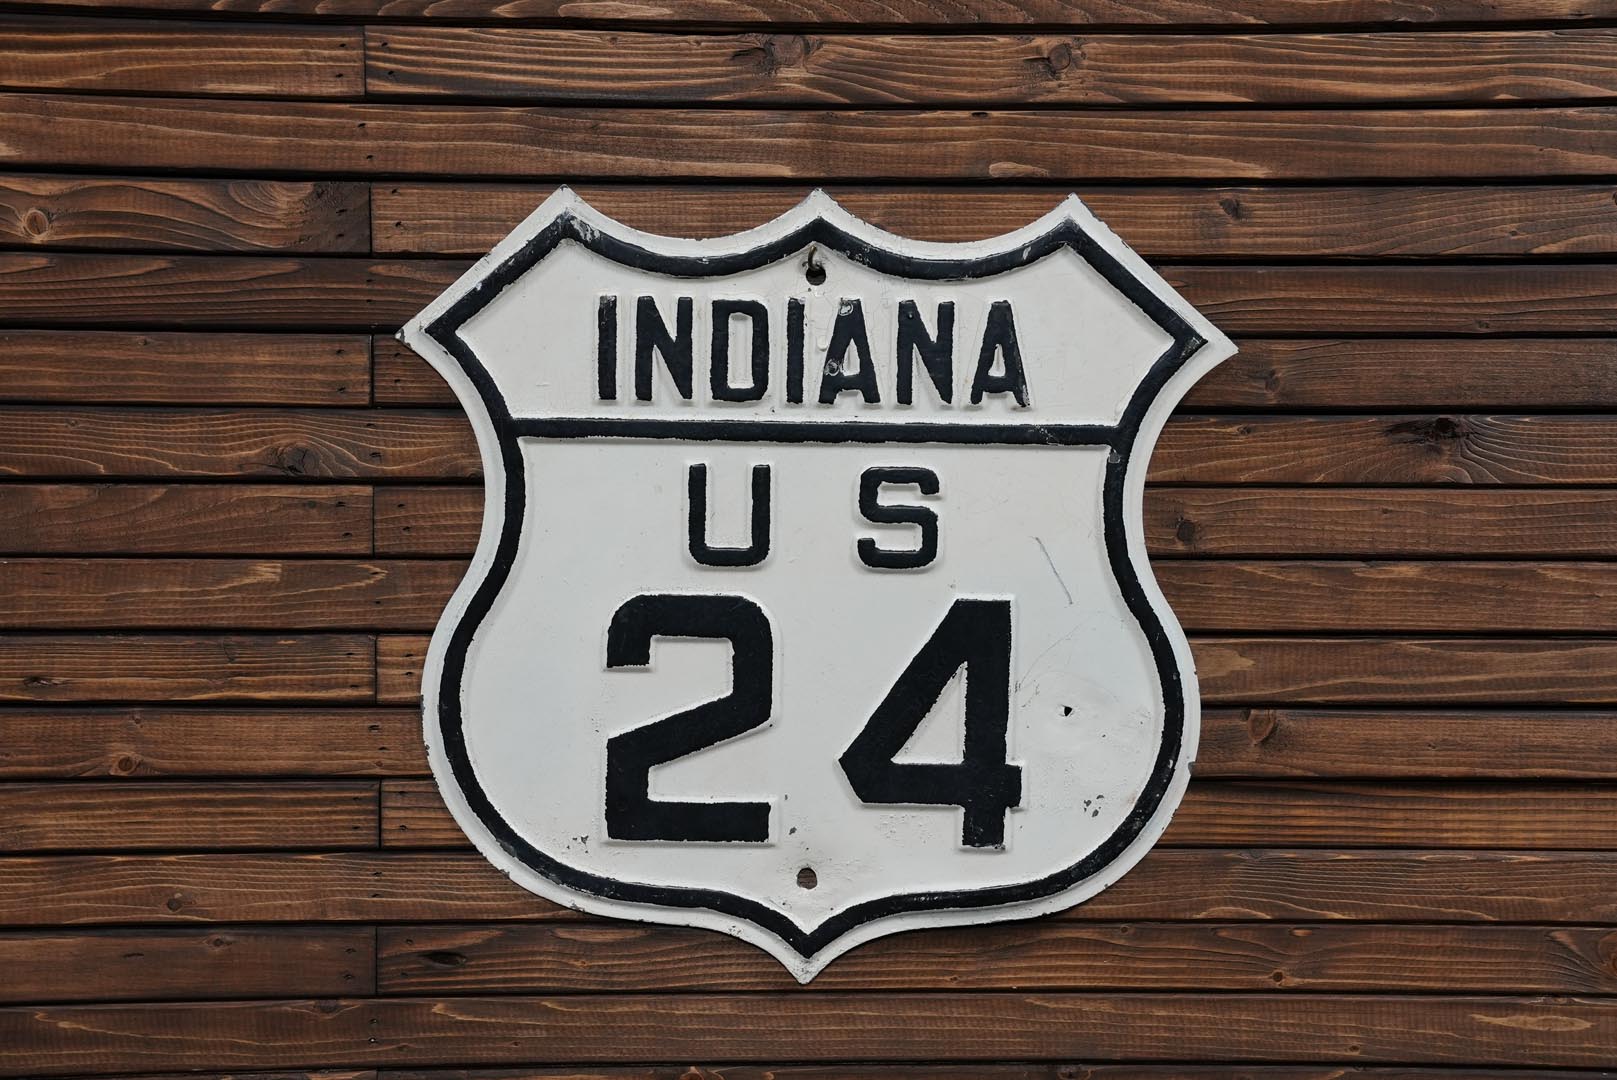 US 24 Highway Marker Embossed Enamel Die-Cut Metal Sign